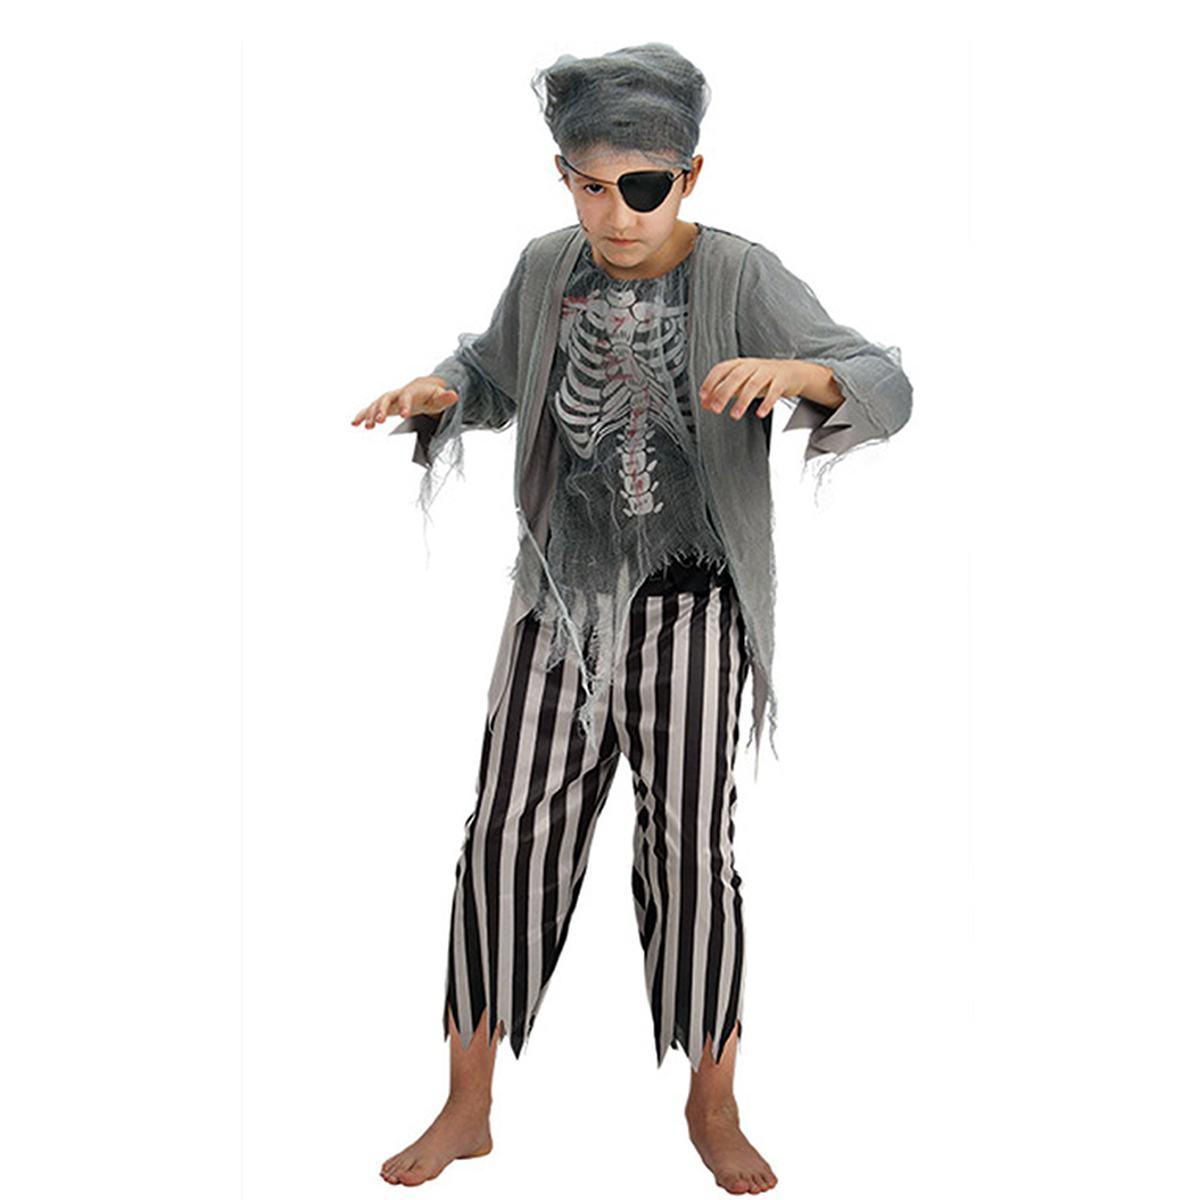 Costume Zombie Pirata Bambino: Perfetto per Halloween